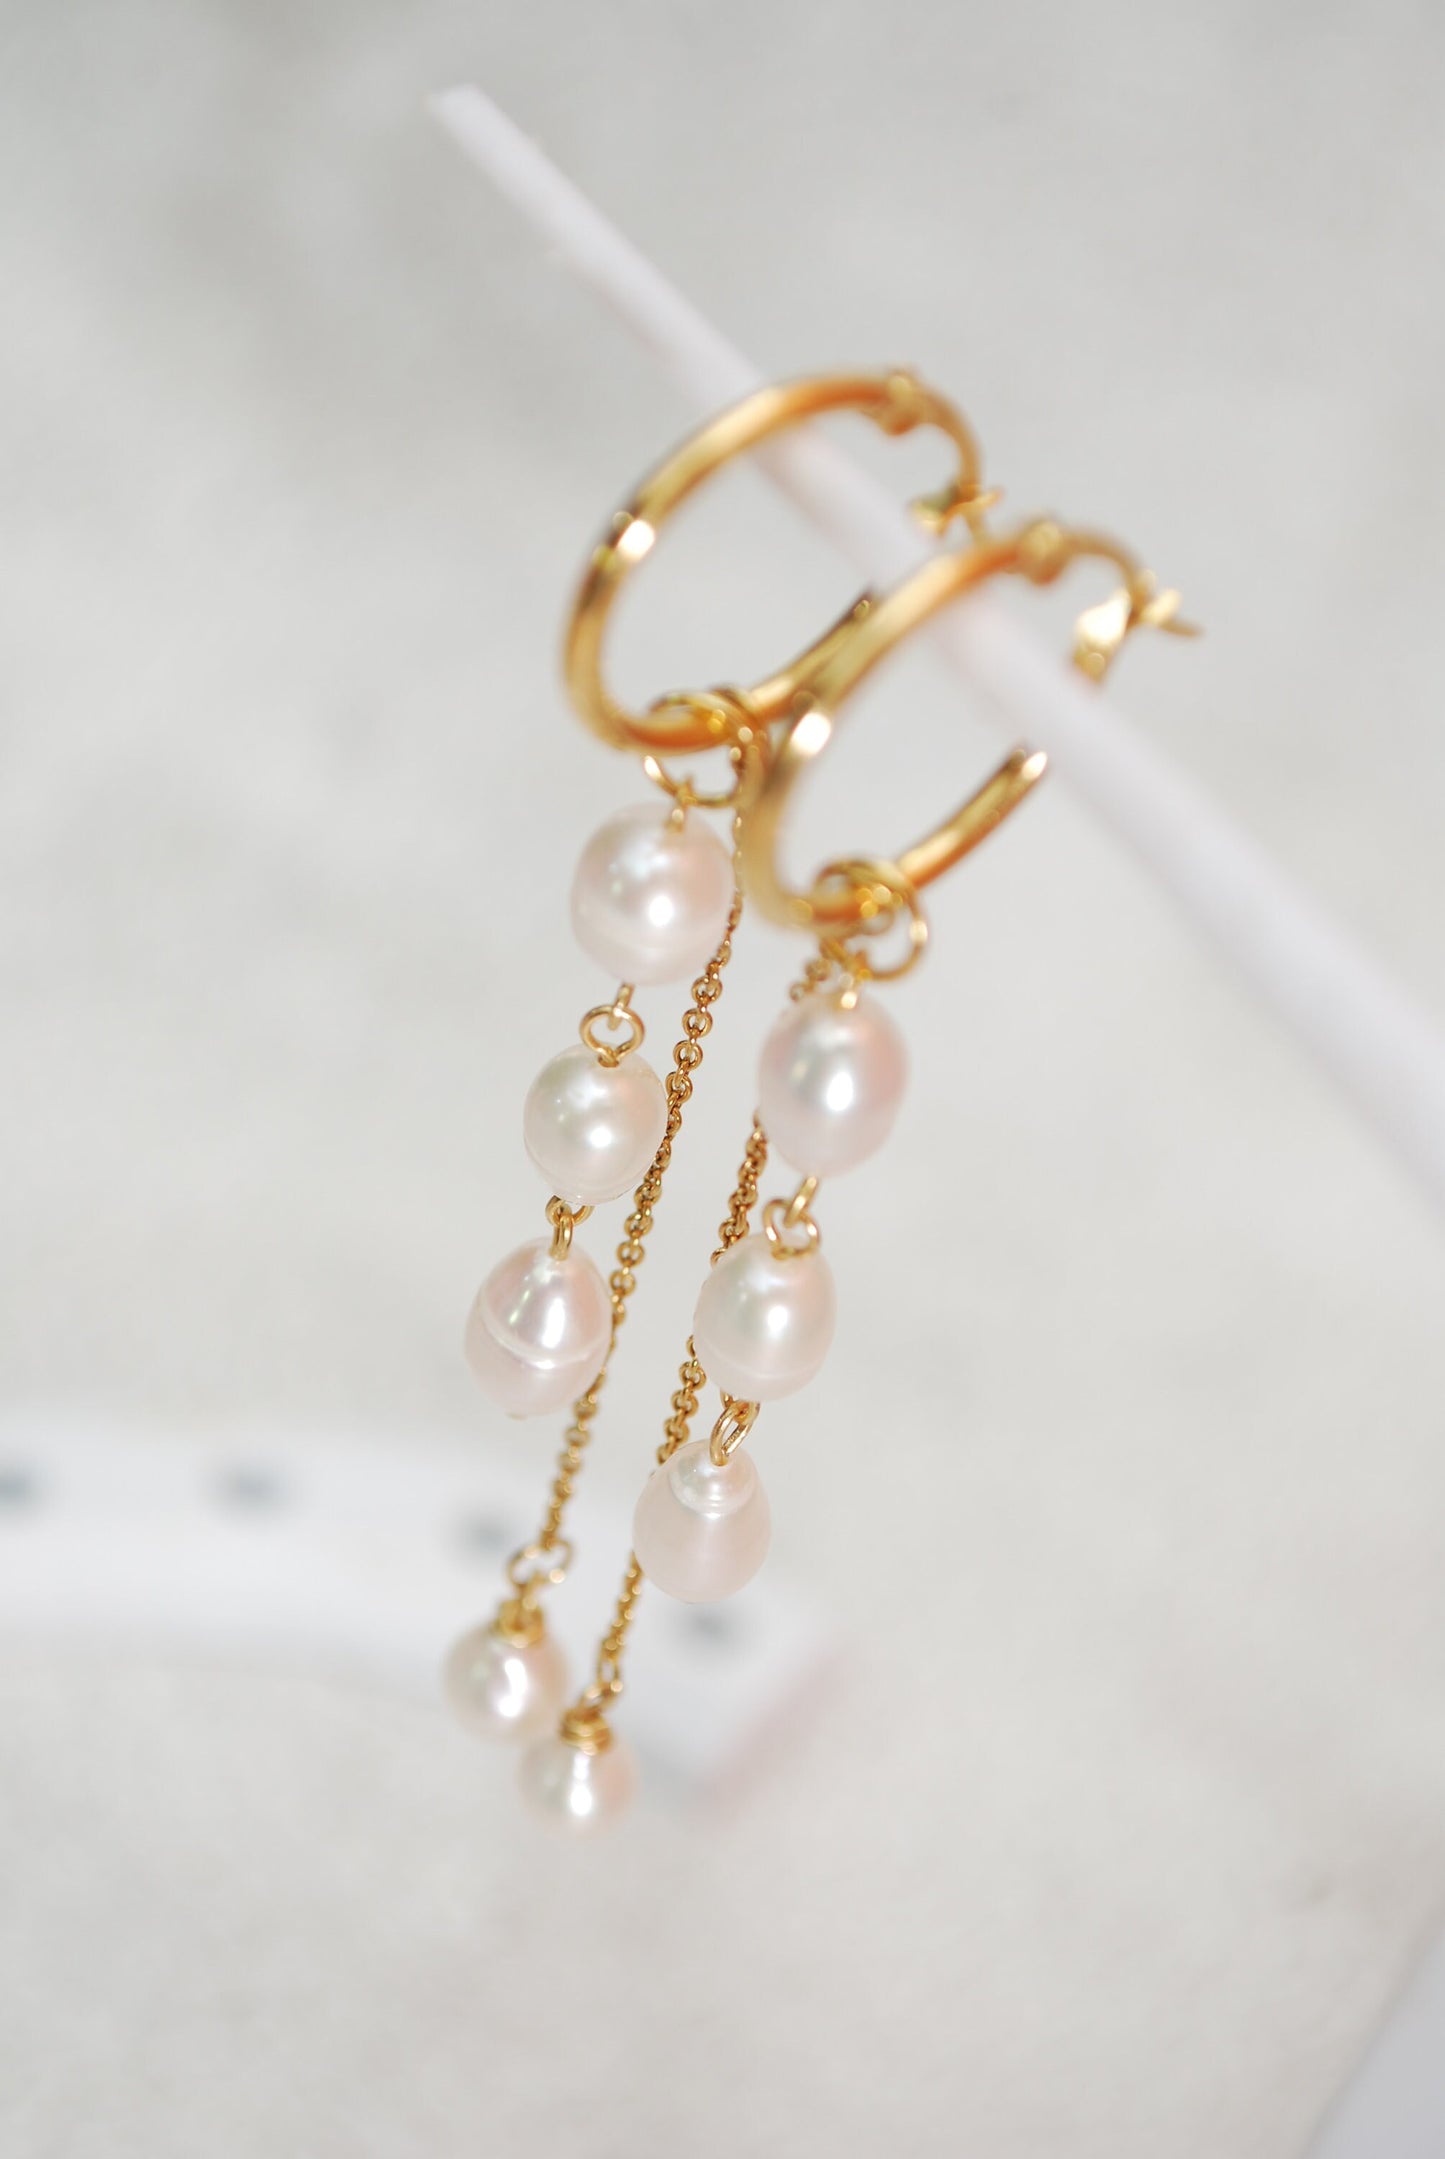 Long cascahe pearl earrings, gold plated stainless steel hoop chain earrings, wedding bride , 9.5cm